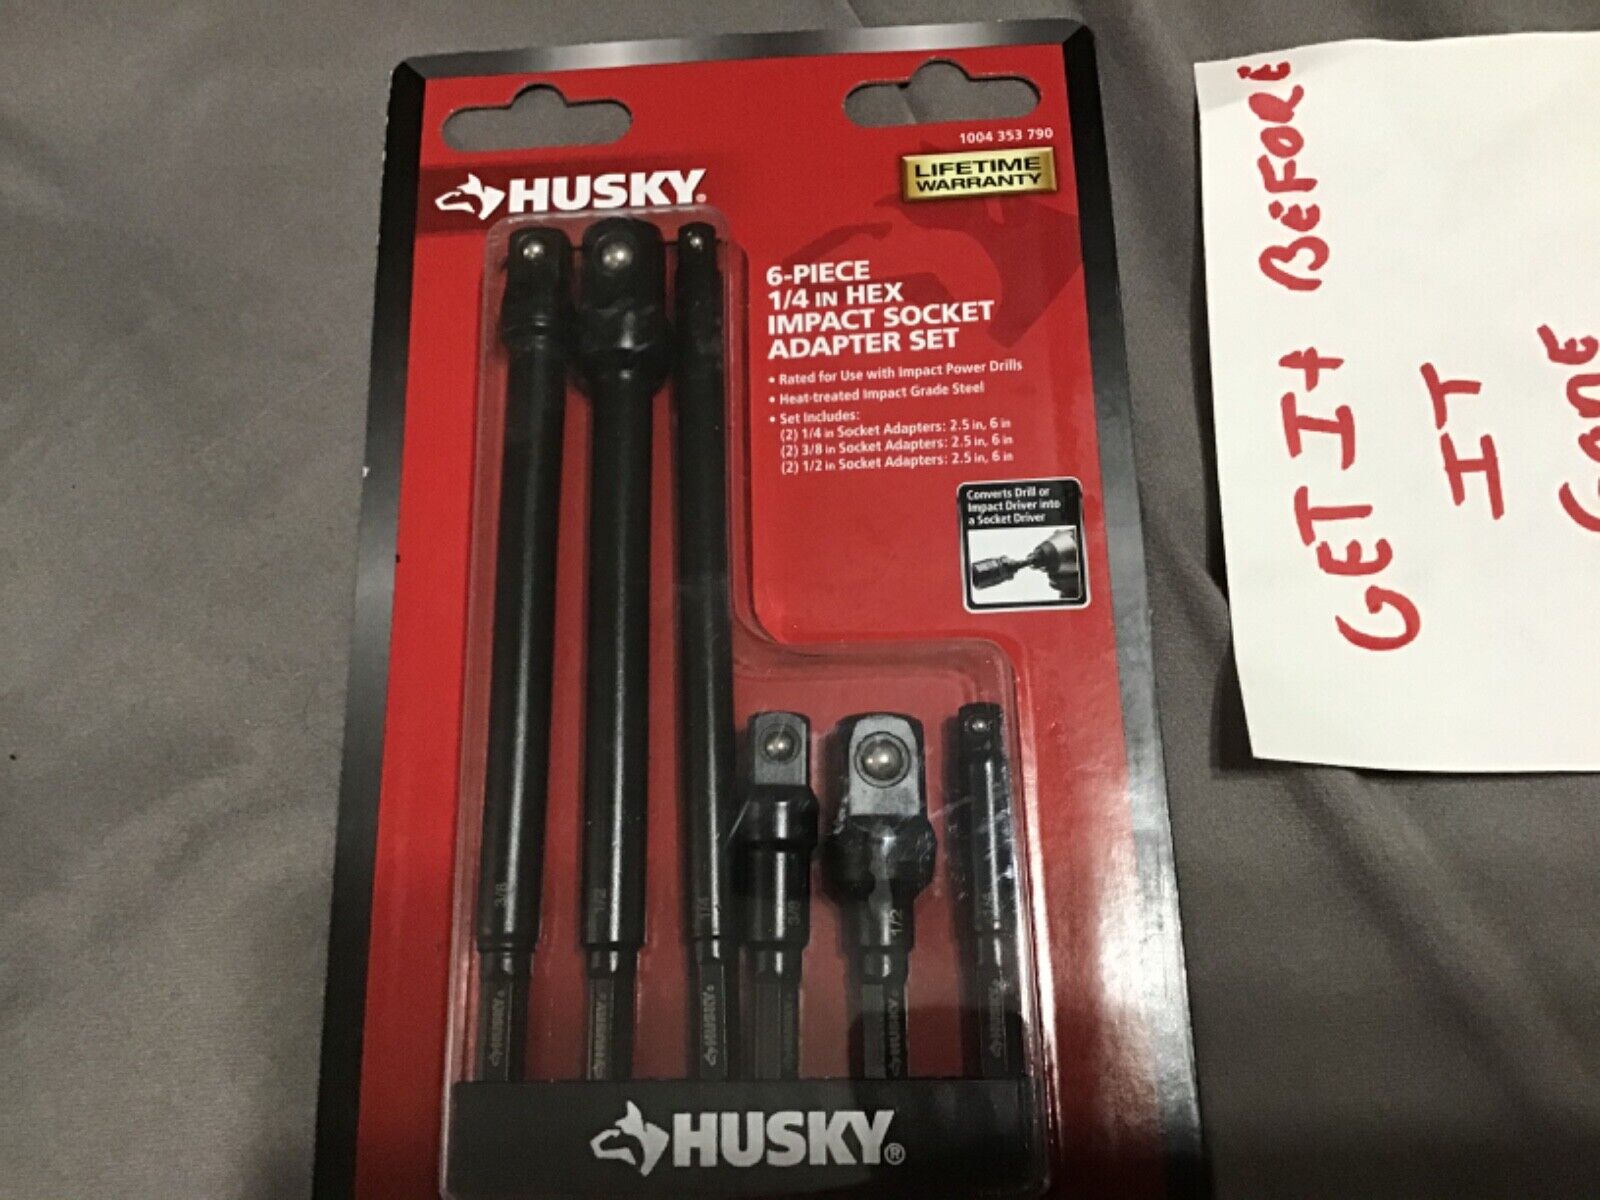 Husky 6-Piece 1/4 in. Hex Impact Socket Adapter Set